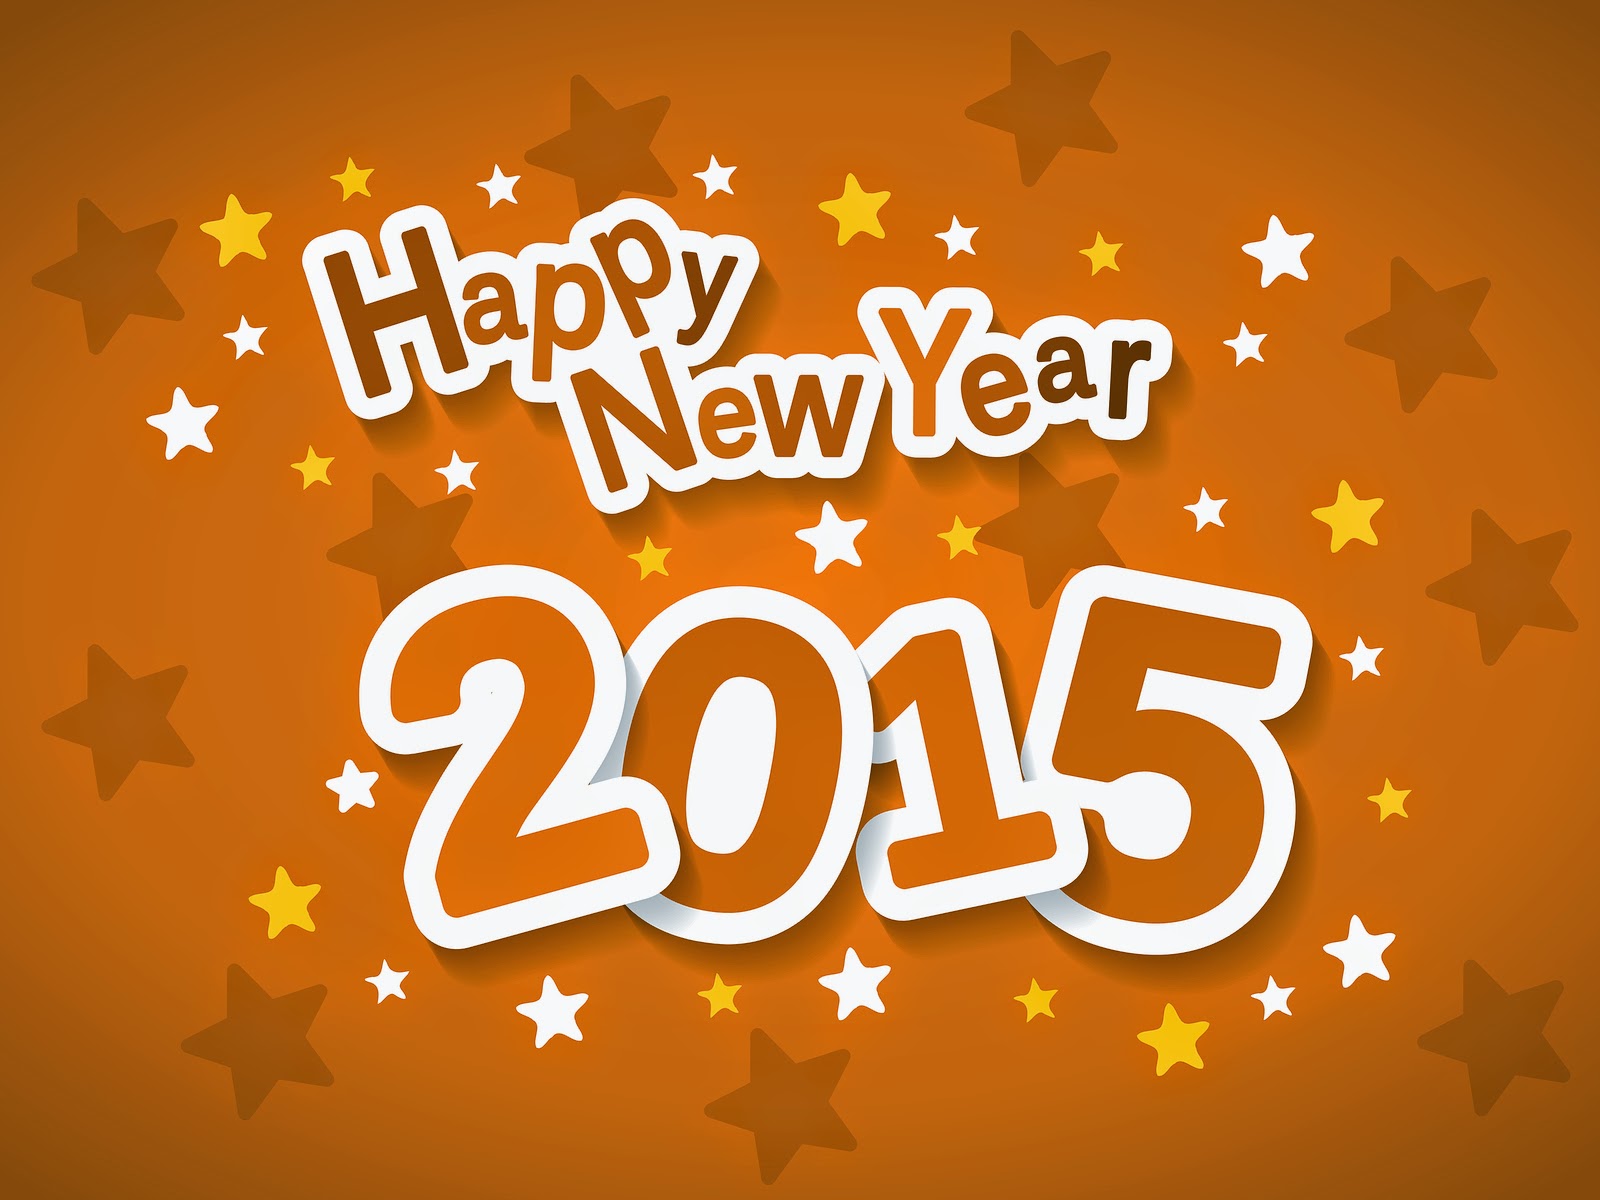 Gambar DP BBM Selamat Tahun Baru 2015 Kata Ucapan Happy New Year 2015 